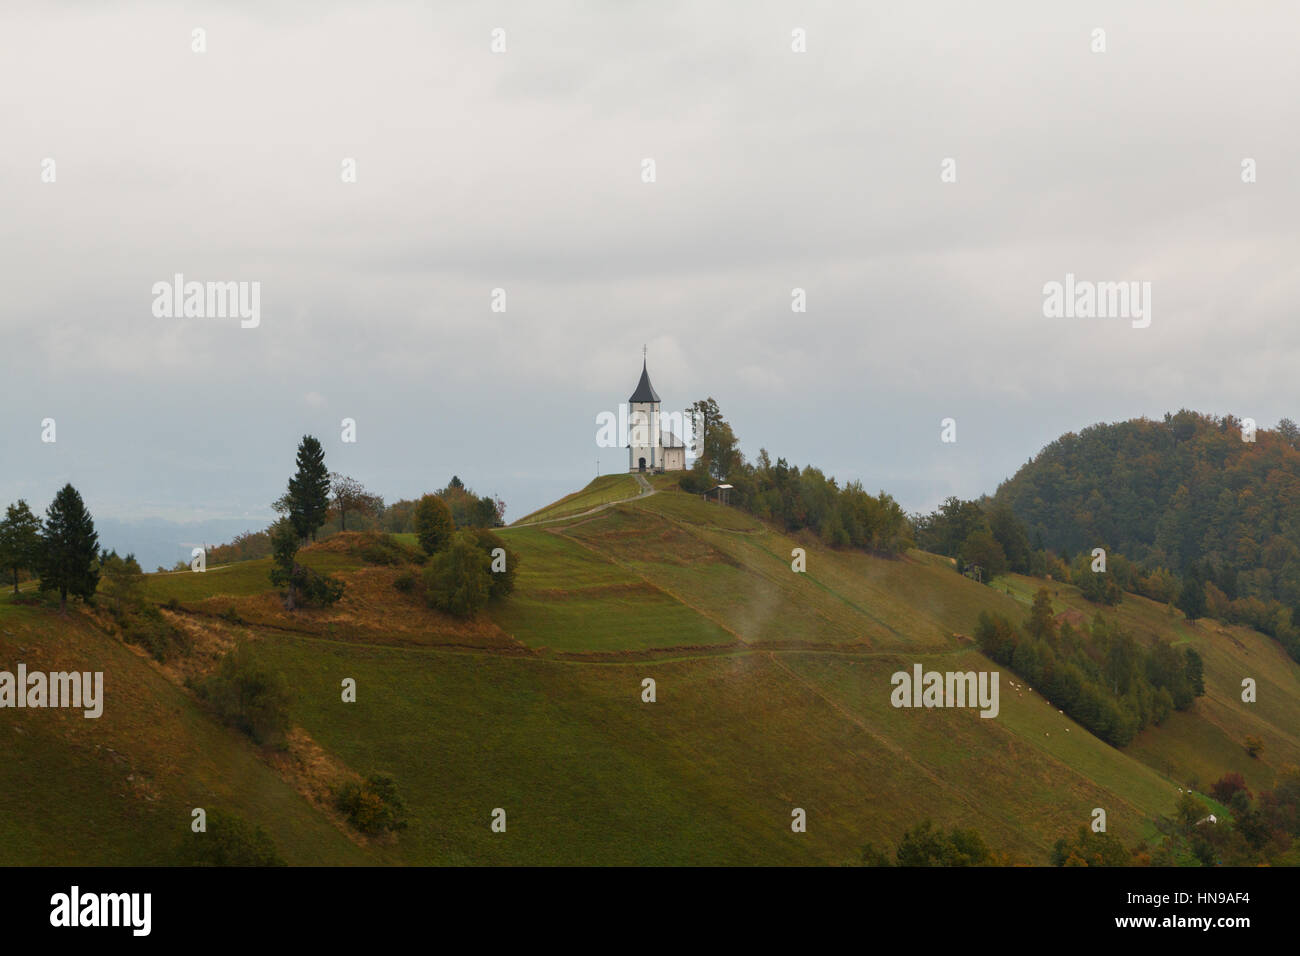 Jamnik Kirche auf einem Hügel im Herbst bei Sonnenuntergang in Slowenien, Europa Stockfoto